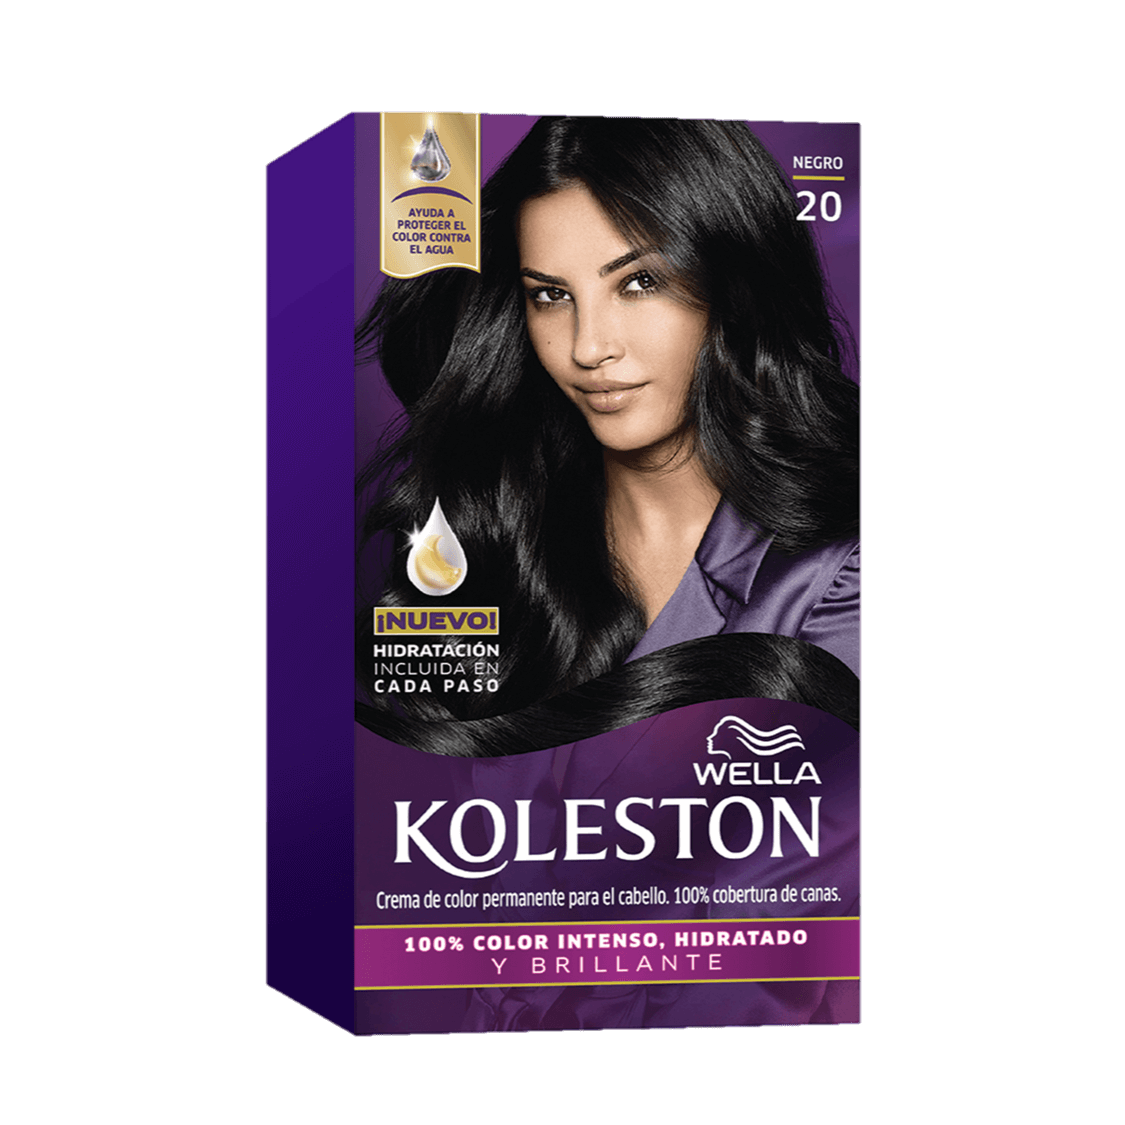 Crema de color permanente para el con factor de protección contra de Koleston de Wella 20 Negro | Wella